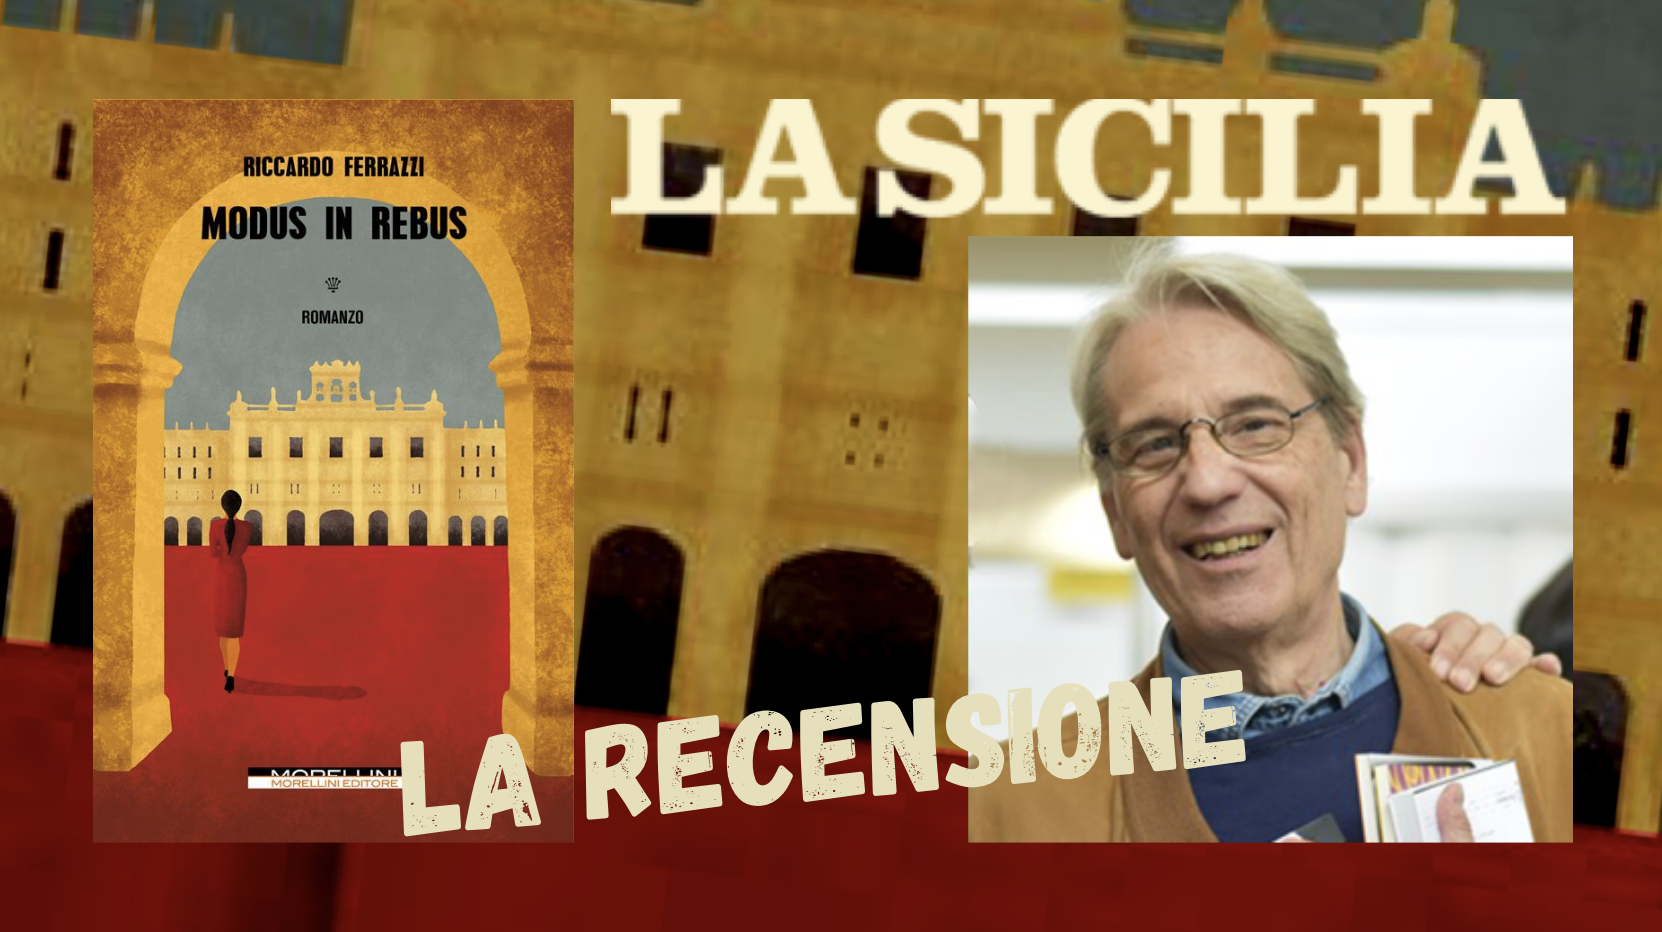 SMF per La Sicilia – “Modus in rebus”, gioiello psicologico sui generis – Recensione al nuovo romanzo di Riccardo Ferrazzi